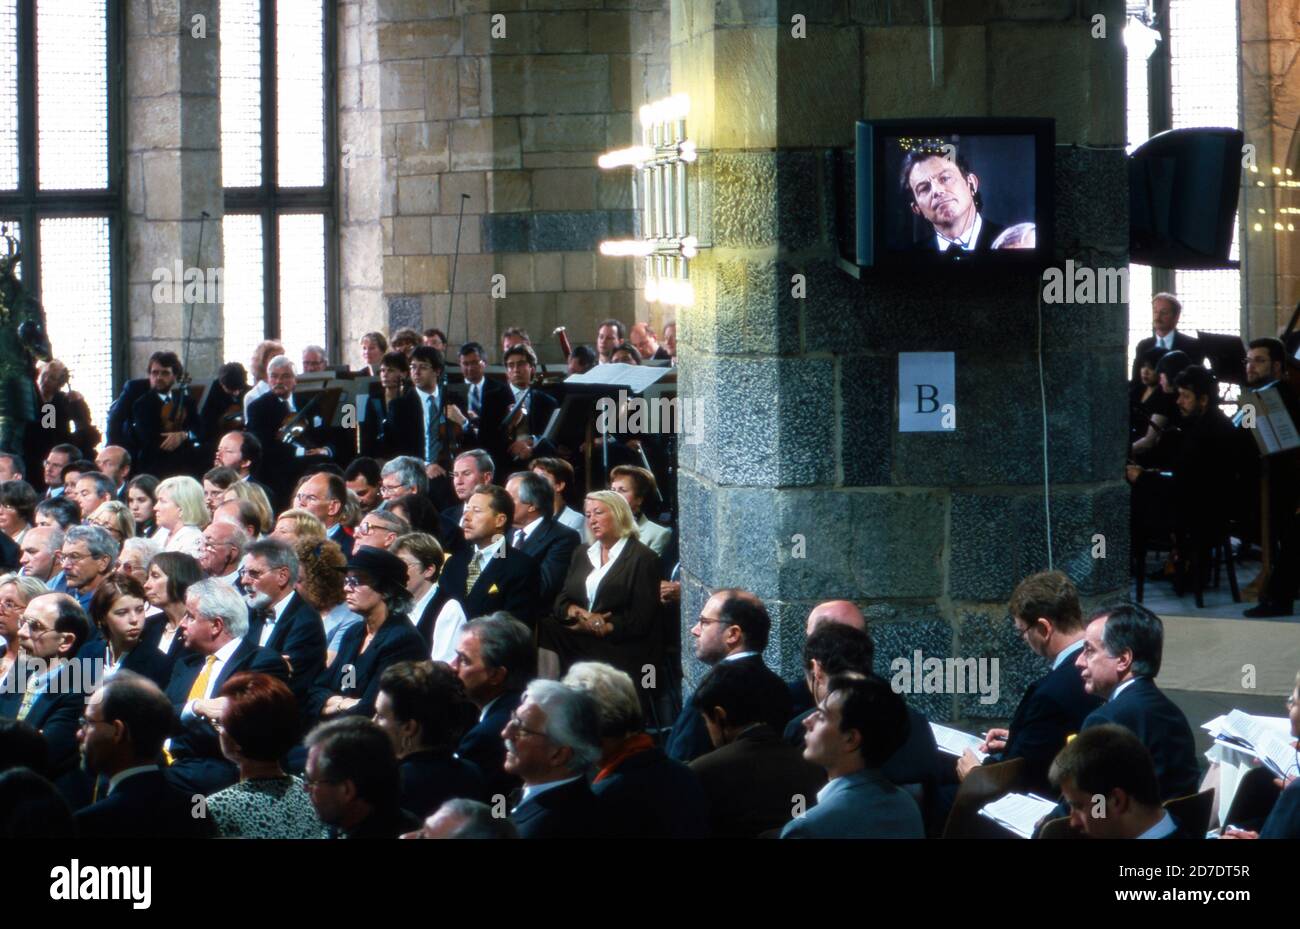 Feierstunde im Rathaus anläßlich der Verleihung des Karlspreises der Stadt Aachen an Tony Blair am 13. Maggio 1999. Foto Stock